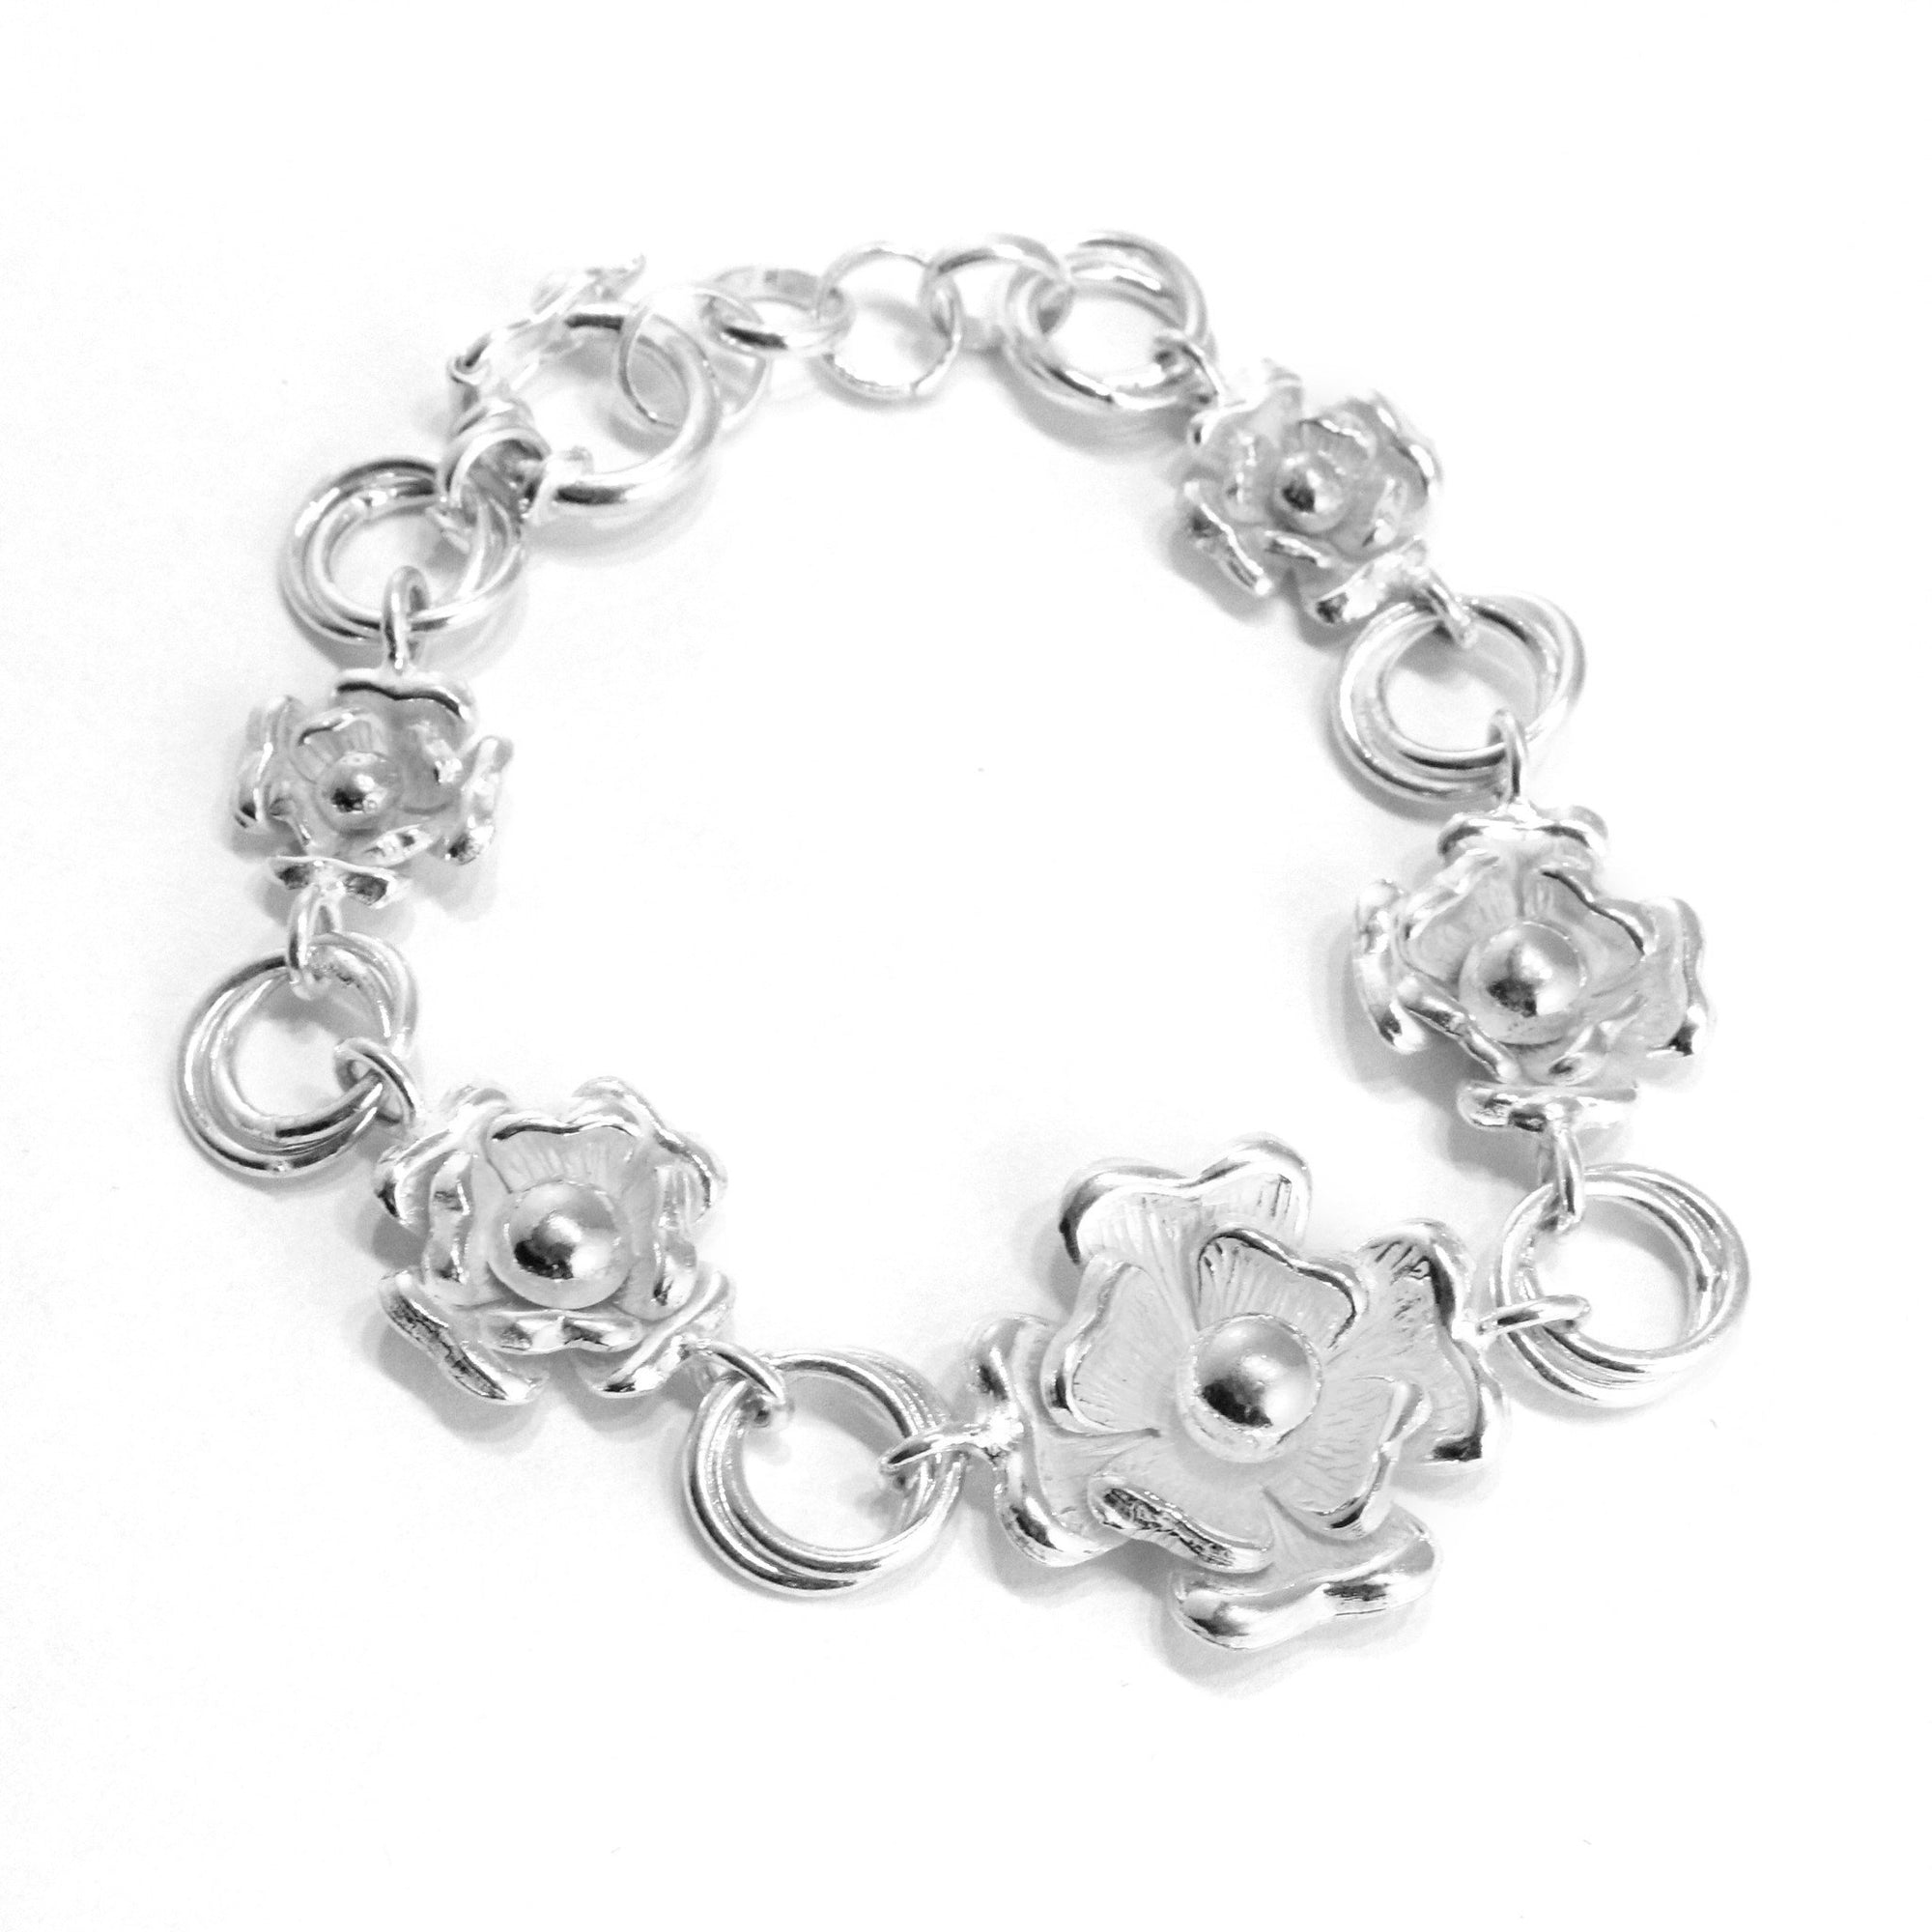 Flowers Bracelet, Earrings & Ring in Sterling Silver - Qinti - The Peruvian Shop